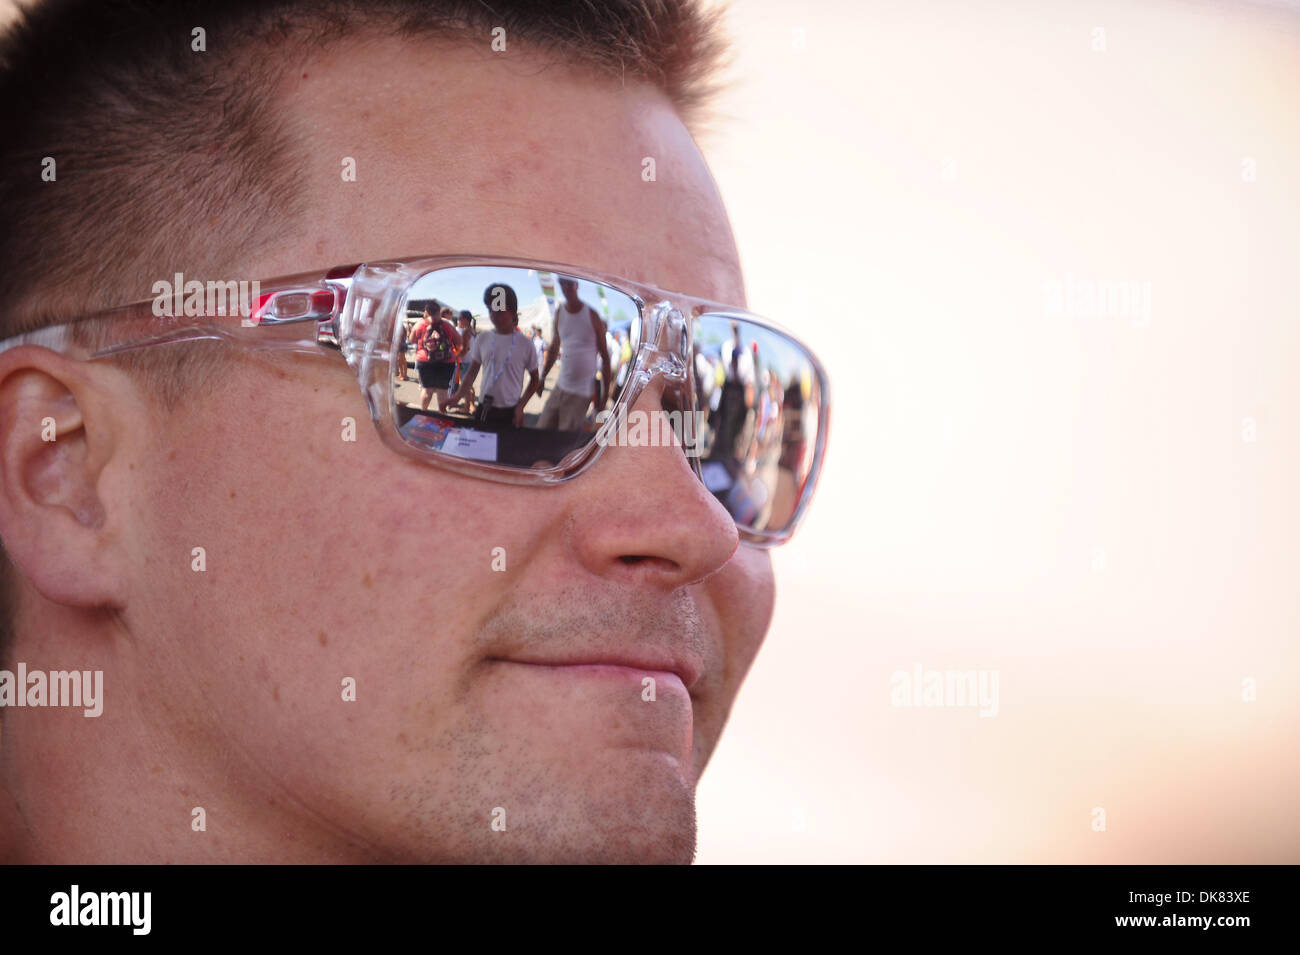 9 juillet 2011 - Lakeville, Connecticut, États-Unis - pilote Risi Competizone Toni Vilander lunettes de partager une réflexion de fans attendent des autographes avant le Grand Prix nord-est de l'aumône à Lime Rock Park. (Crédit Image : © Geoff Bolte/ZUMAPRESS.com) Southcreek/mondial Banque D'Images